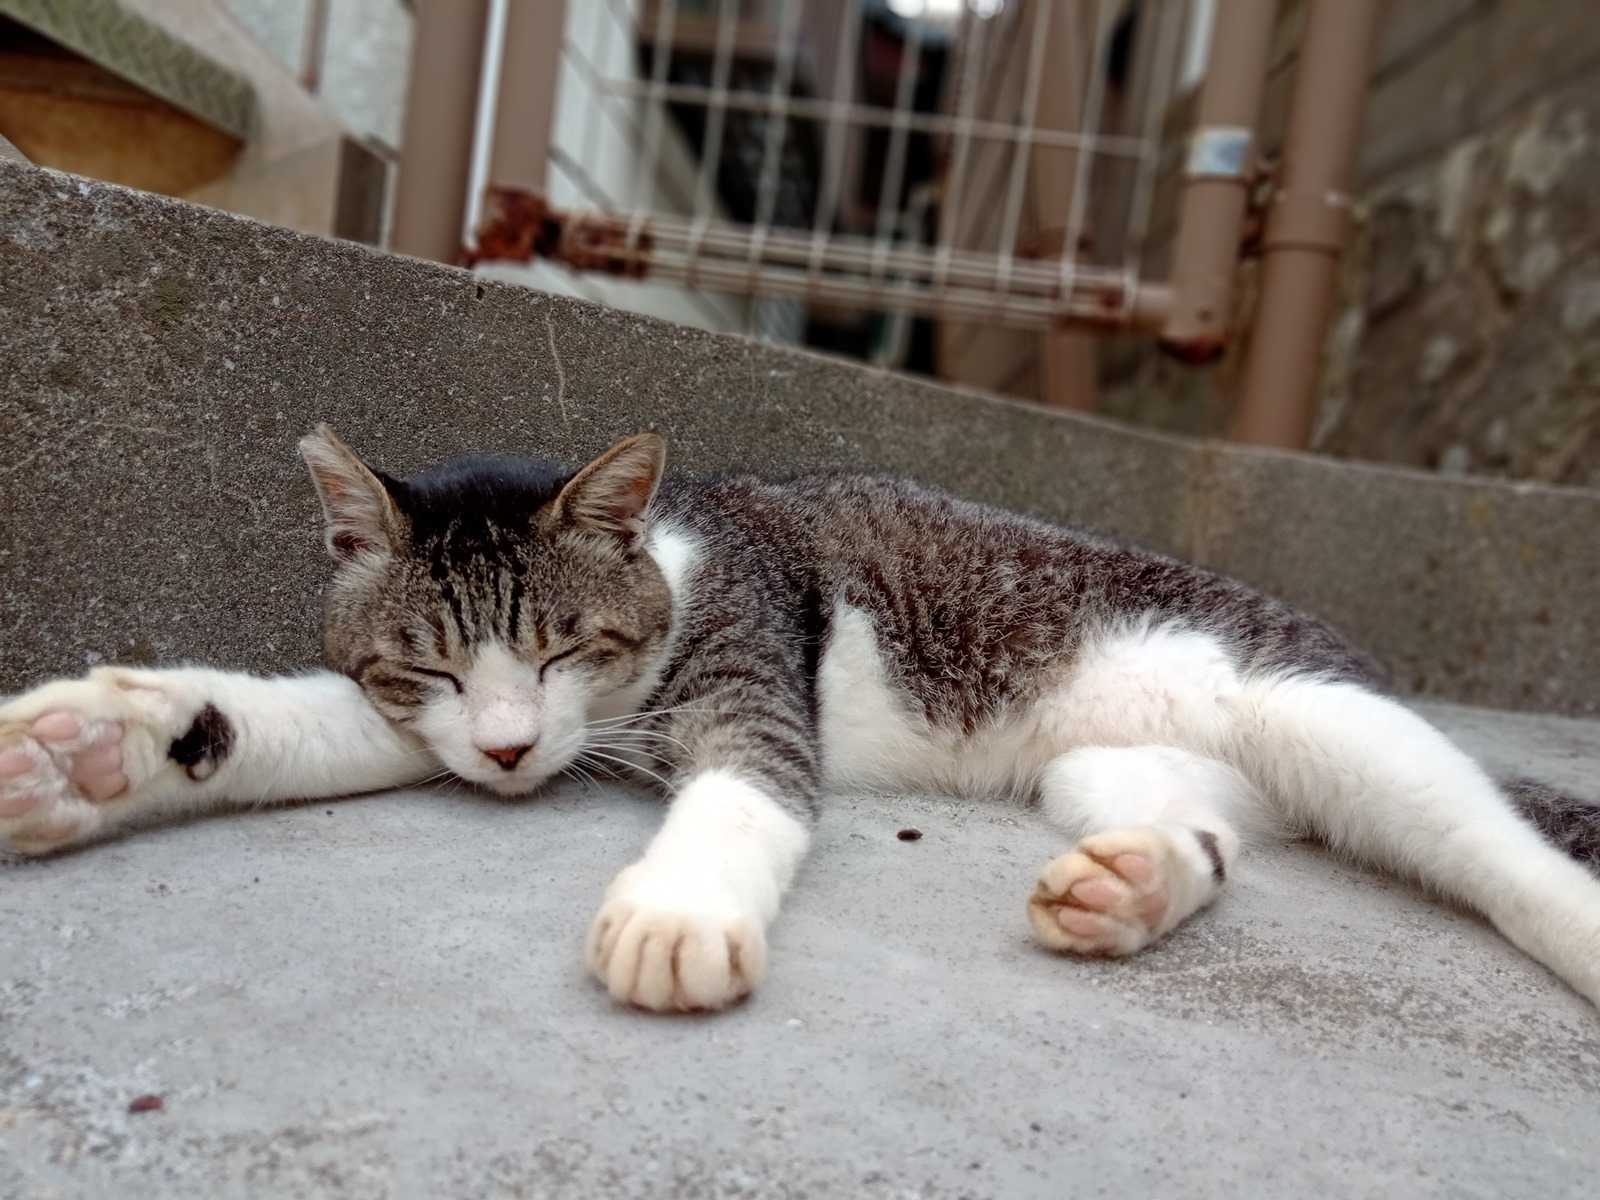 滿滿的貓貓貓貓！HTC Desire 19+ 挑戰日本著名貓島『青島』！實拍分享+旅行攻略貓貓 @3C 達人廖阿輝